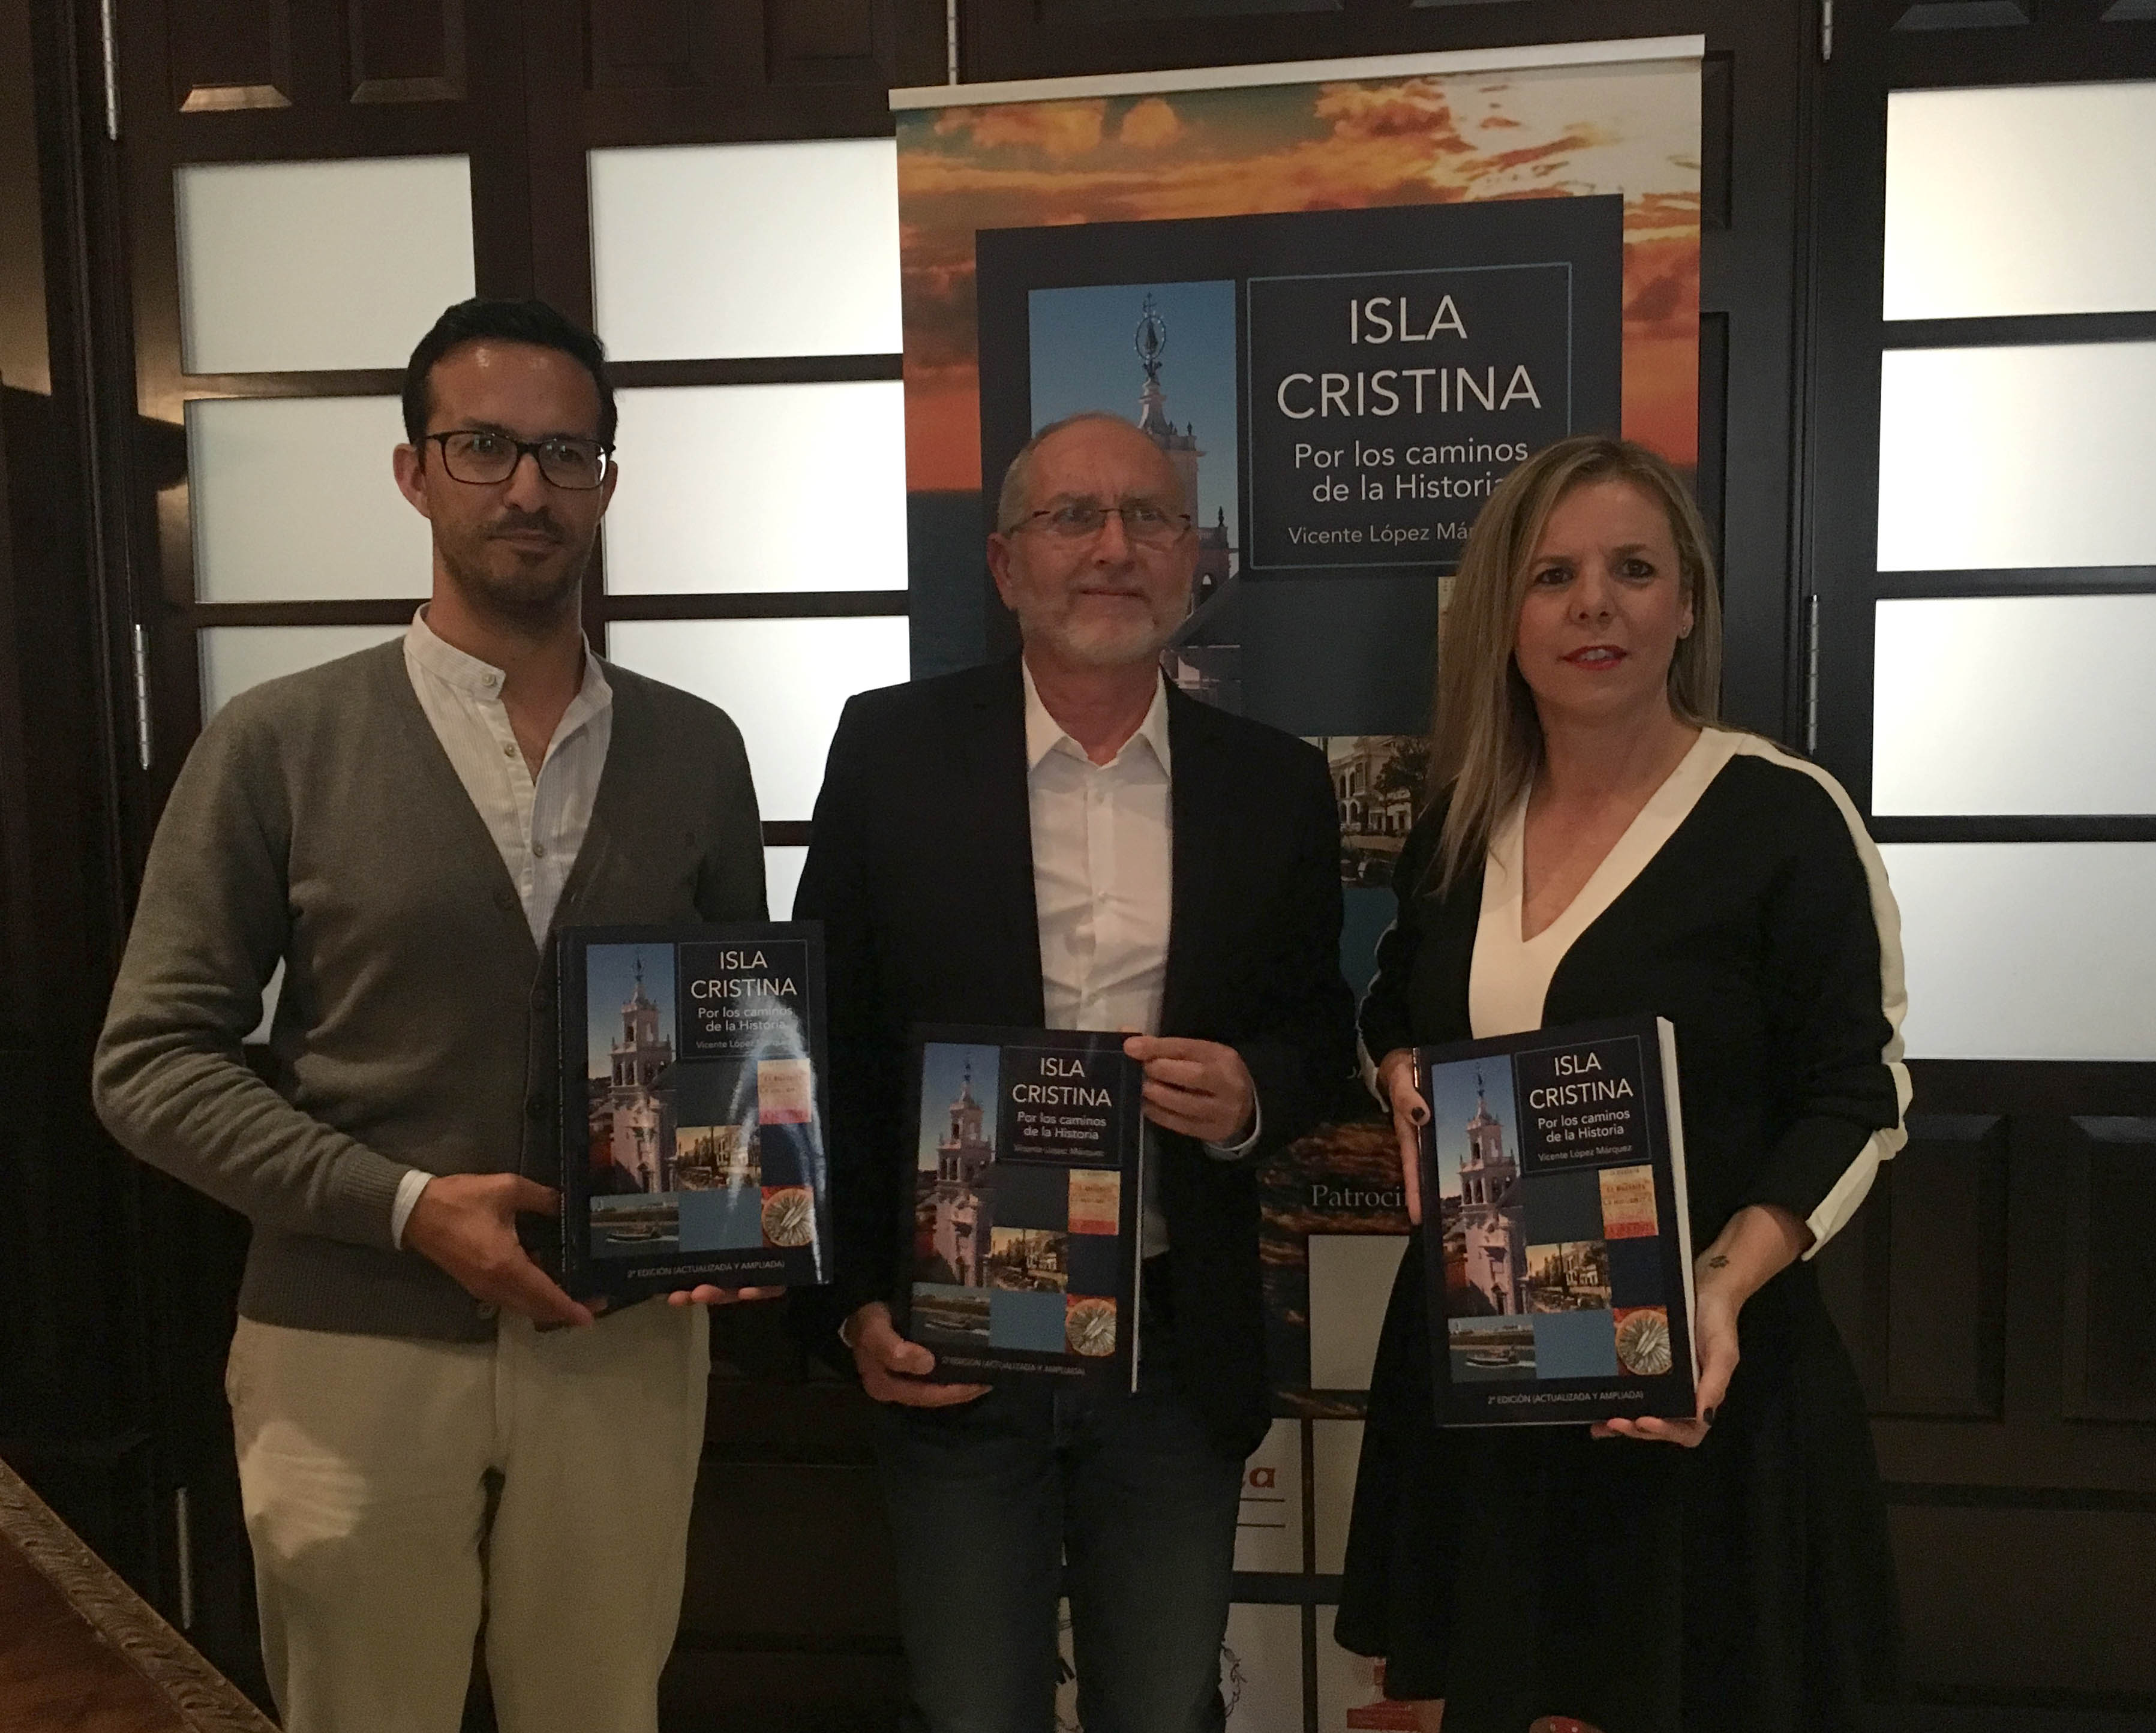 Publicada la reedición del libro Isla Cristina por los caminos de la historia de Vicente López Márquez